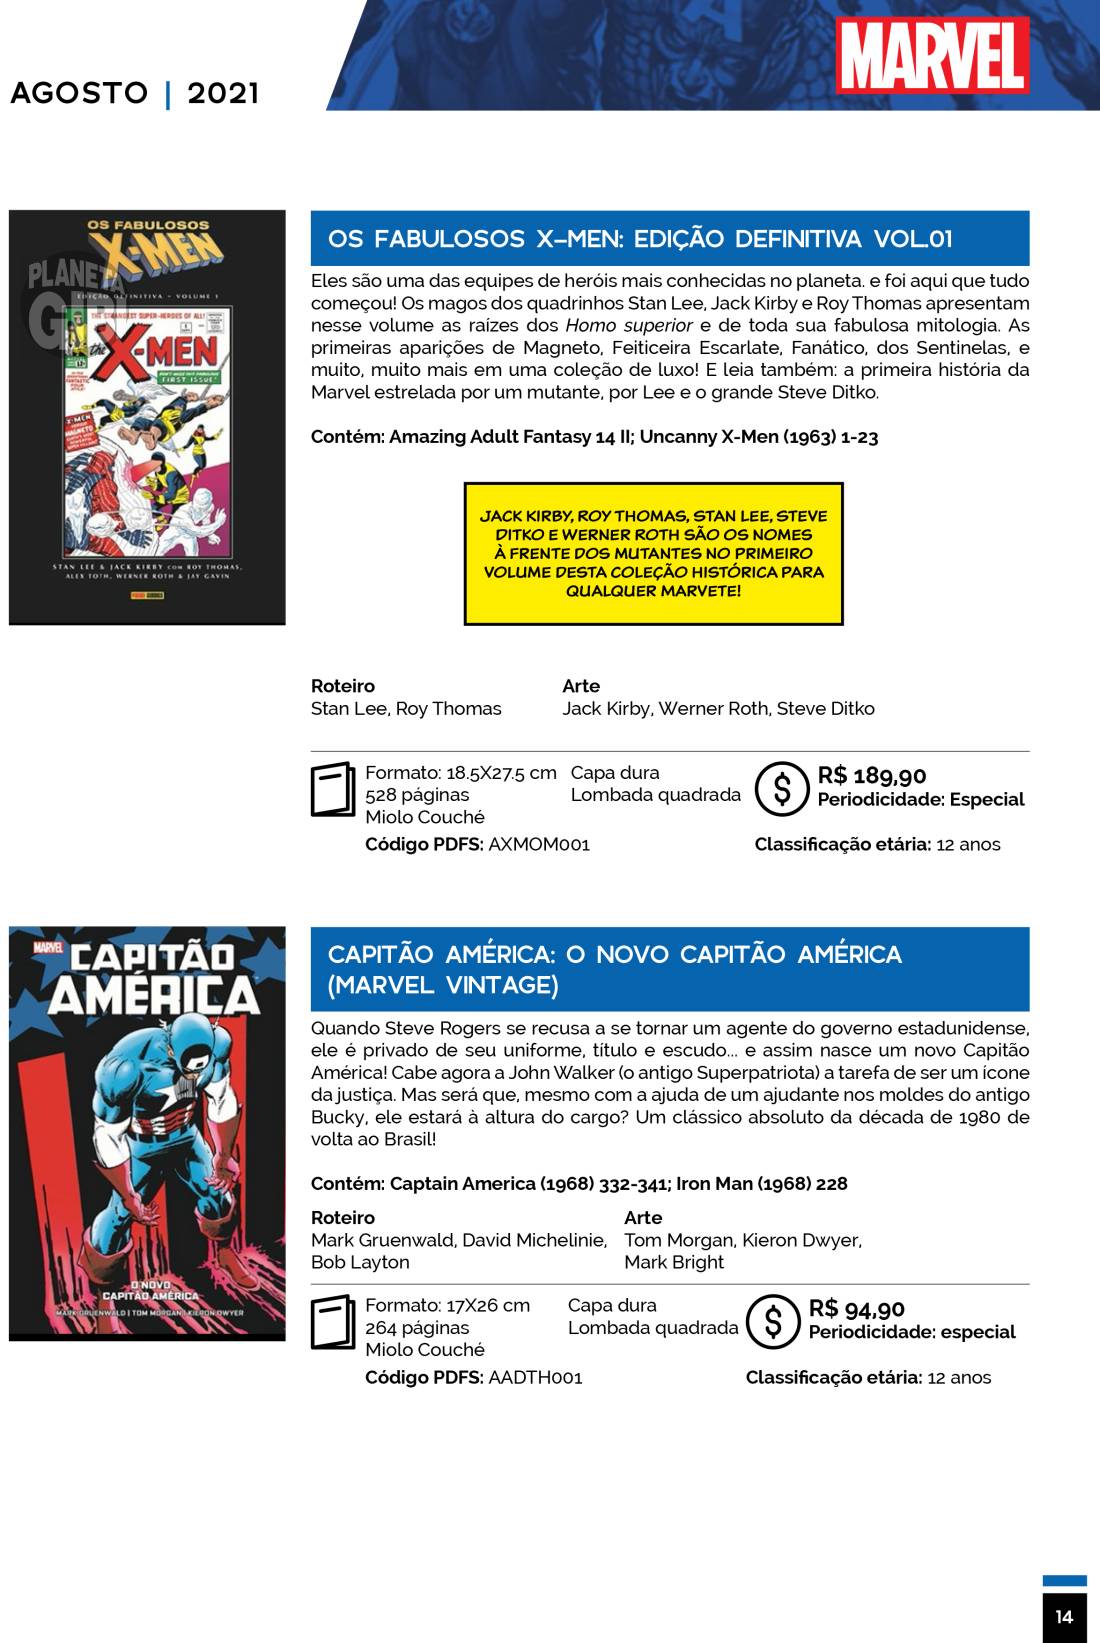 9 - Checklist Marvel/Panini (Julho/2020 - pág.09) - Página 9 Catalogo-Julho-Agosto-14